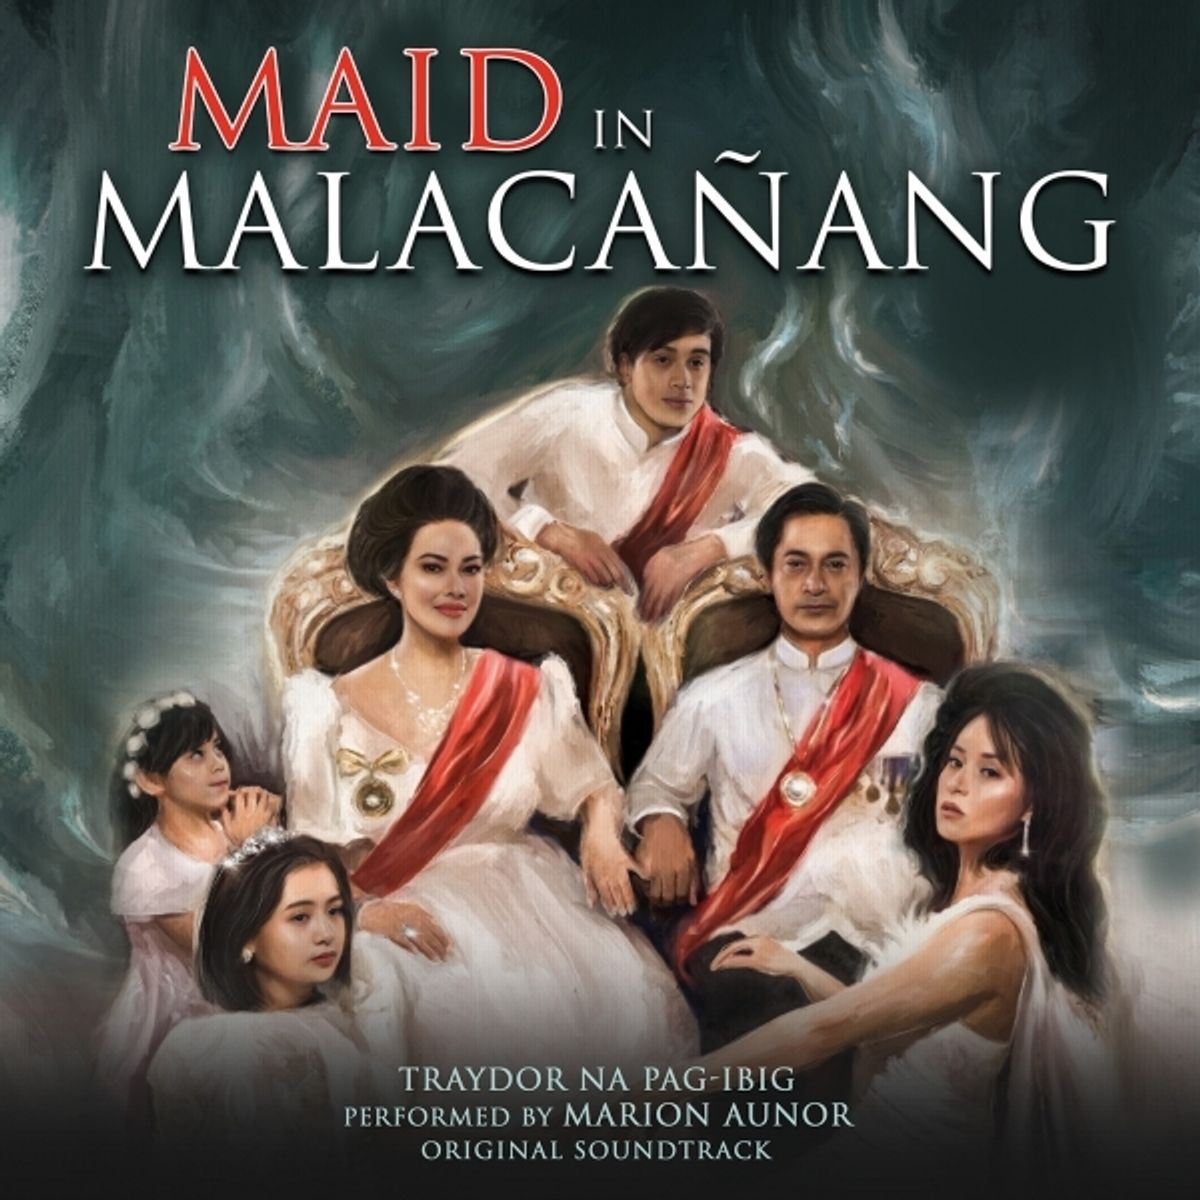 Marion Aunor - Traydor na Pag-ibig (from "Maid in Malacañang")